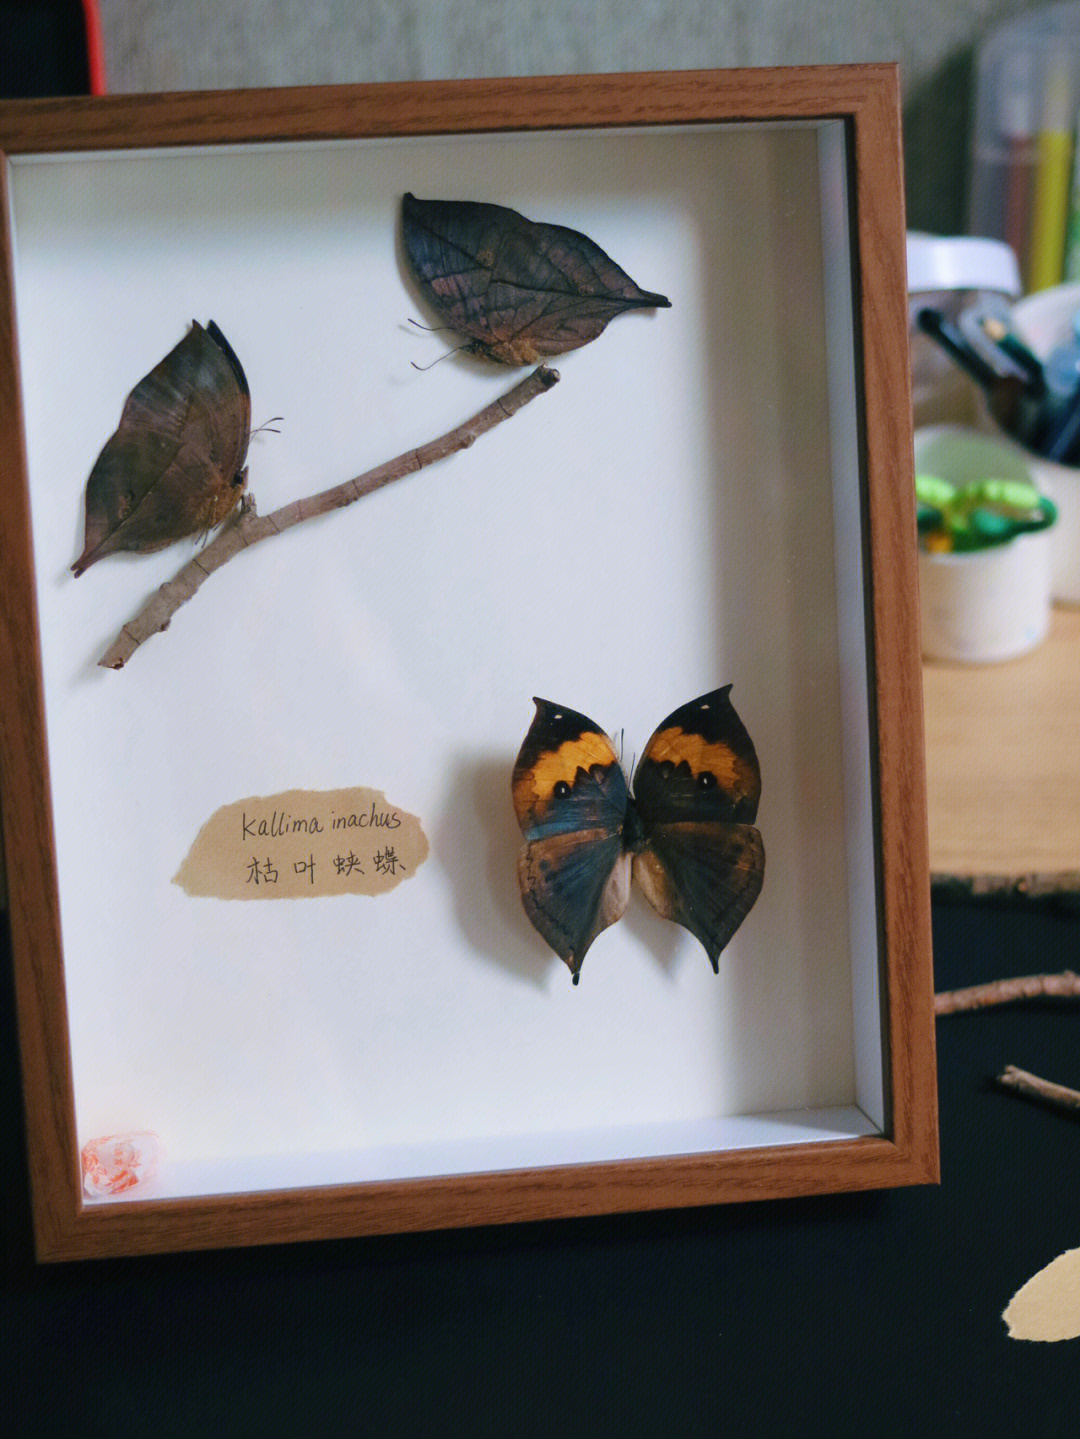 觉得它们的翅膀形态很美,但收集多了蝴蝶品种后,突然发现枯叶蝶真的很